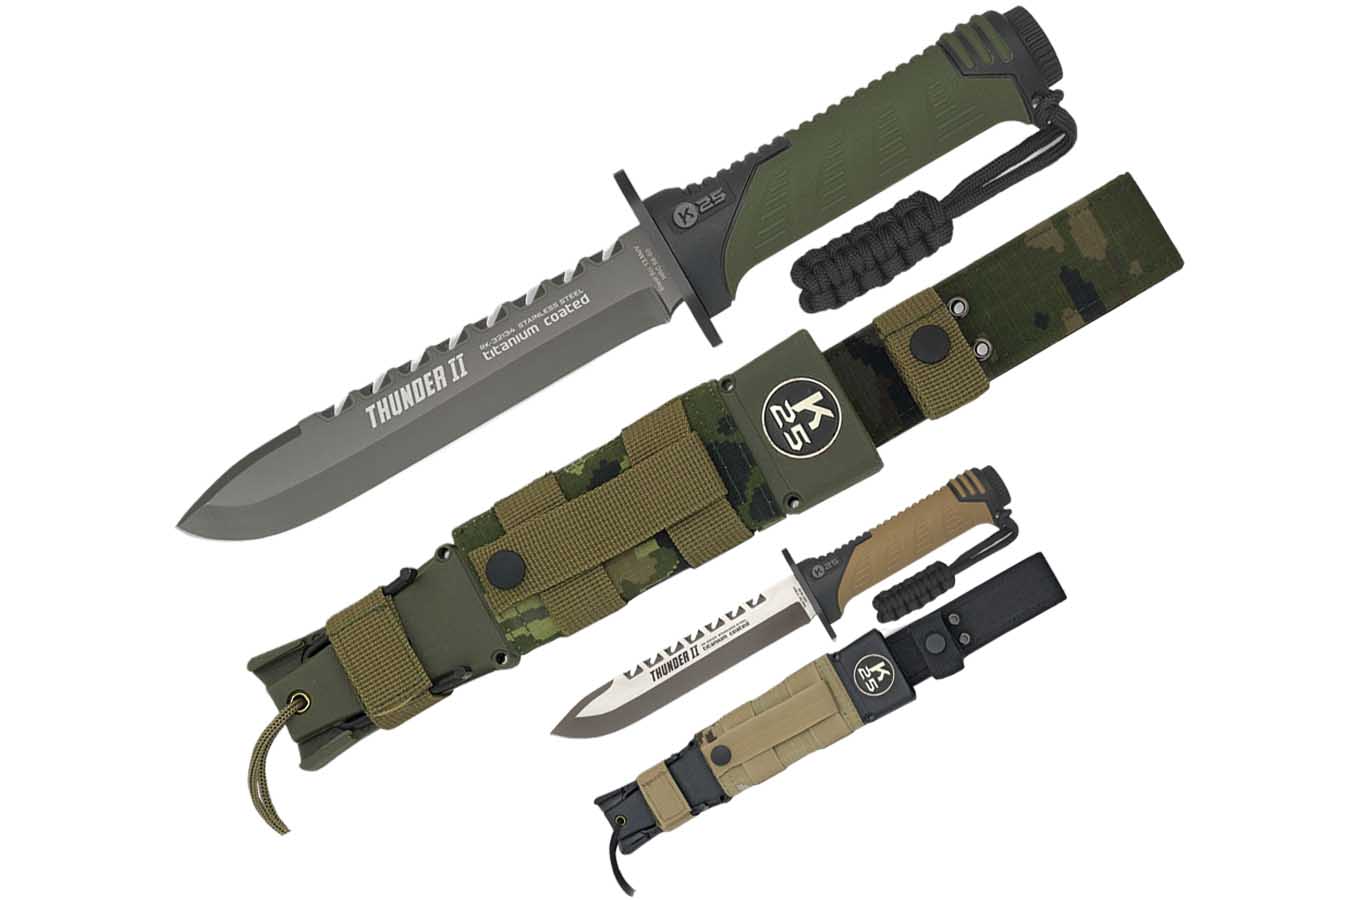 Cuchillo de caza, con kit de supervivencia - Thunder II, K25